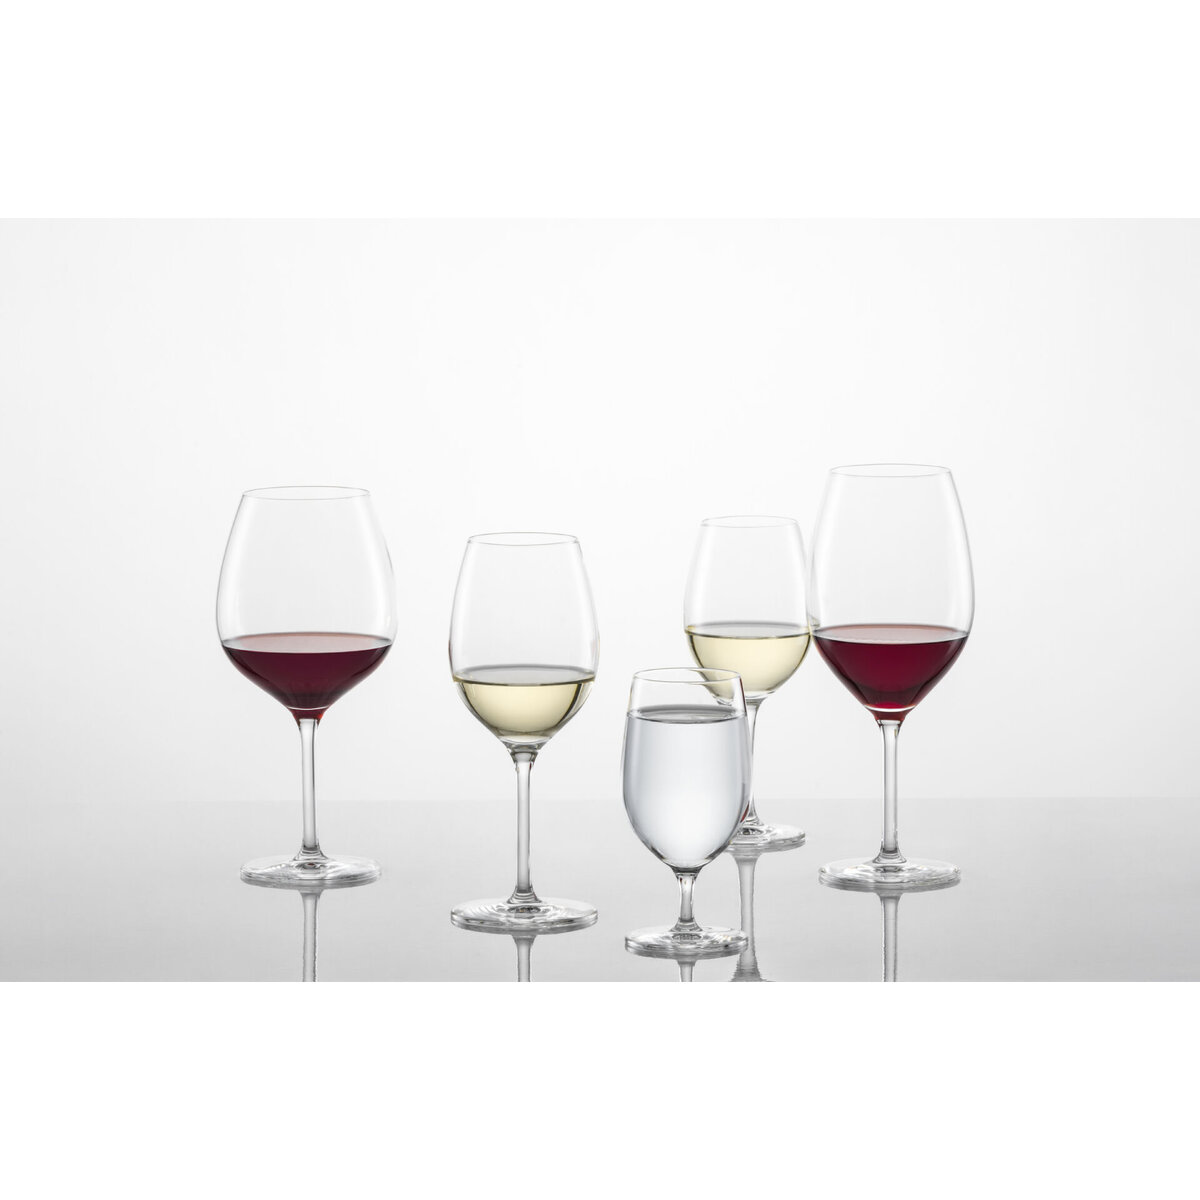 Glasserie "Banquet" Weißweinglas 365ml mit Füllstrich (2)